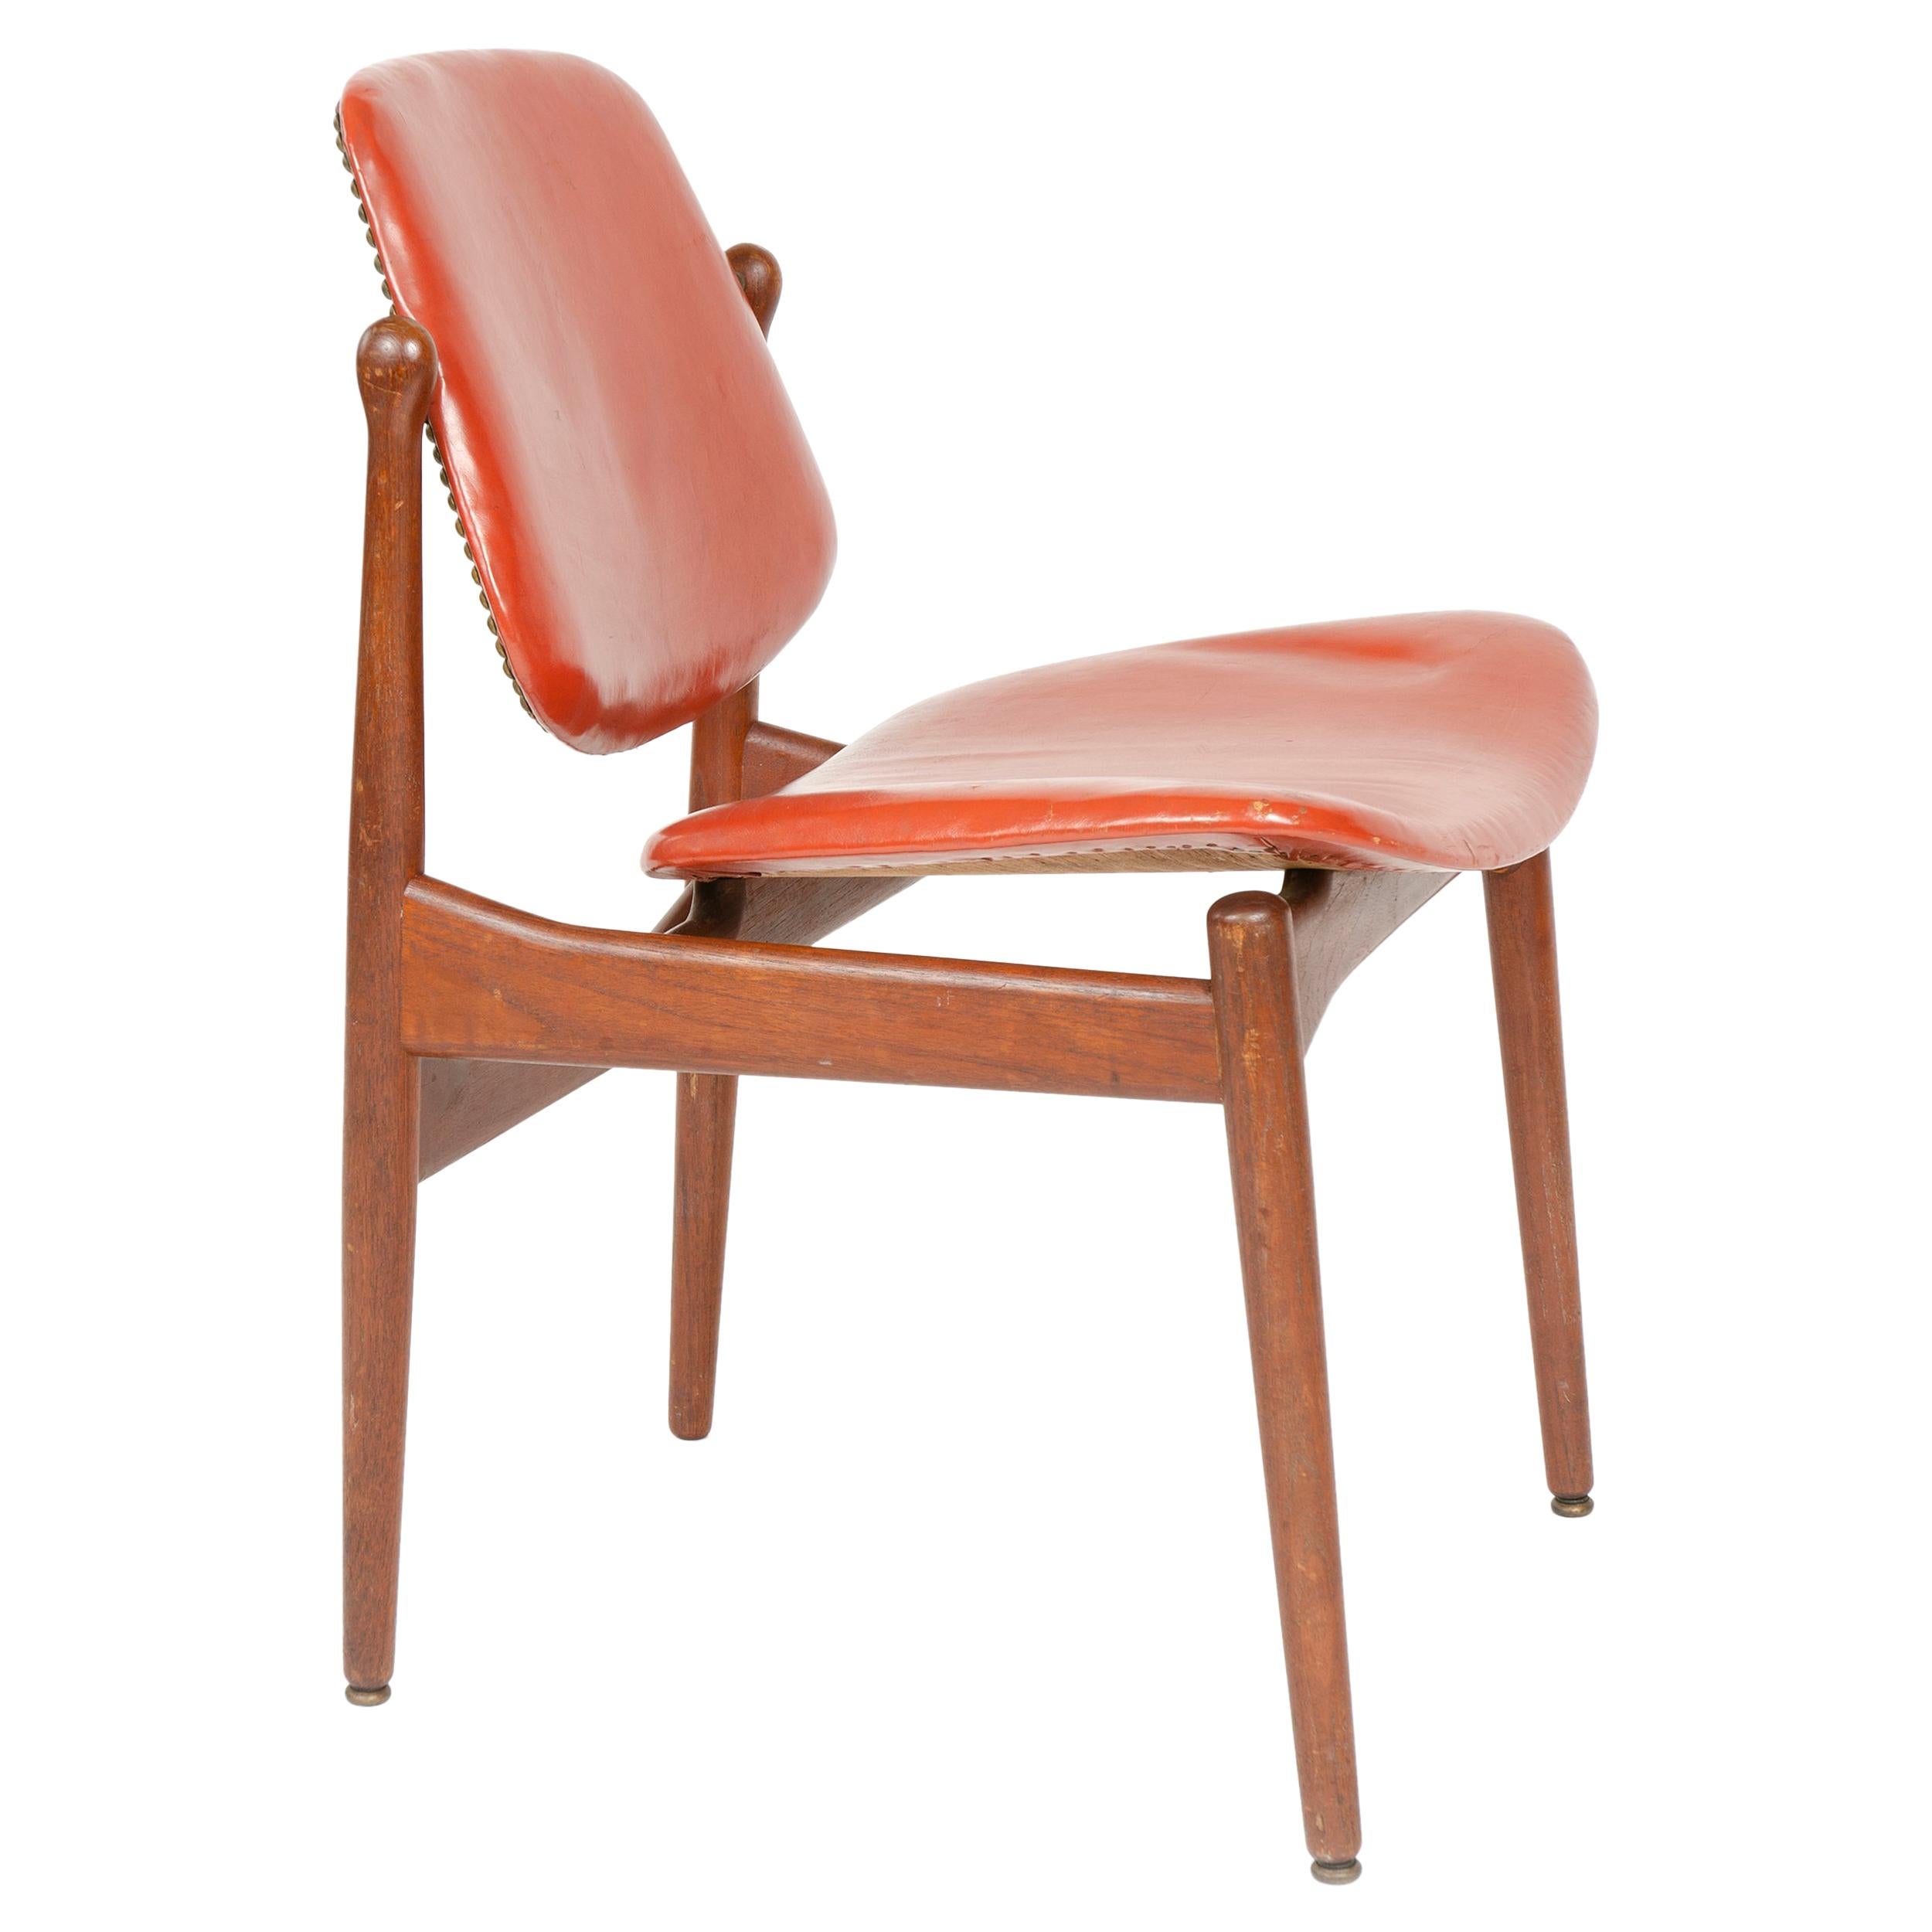 1950s Danish Solid Teak Dining Chair by Arne Vodder for France & Daverkosen For Sale